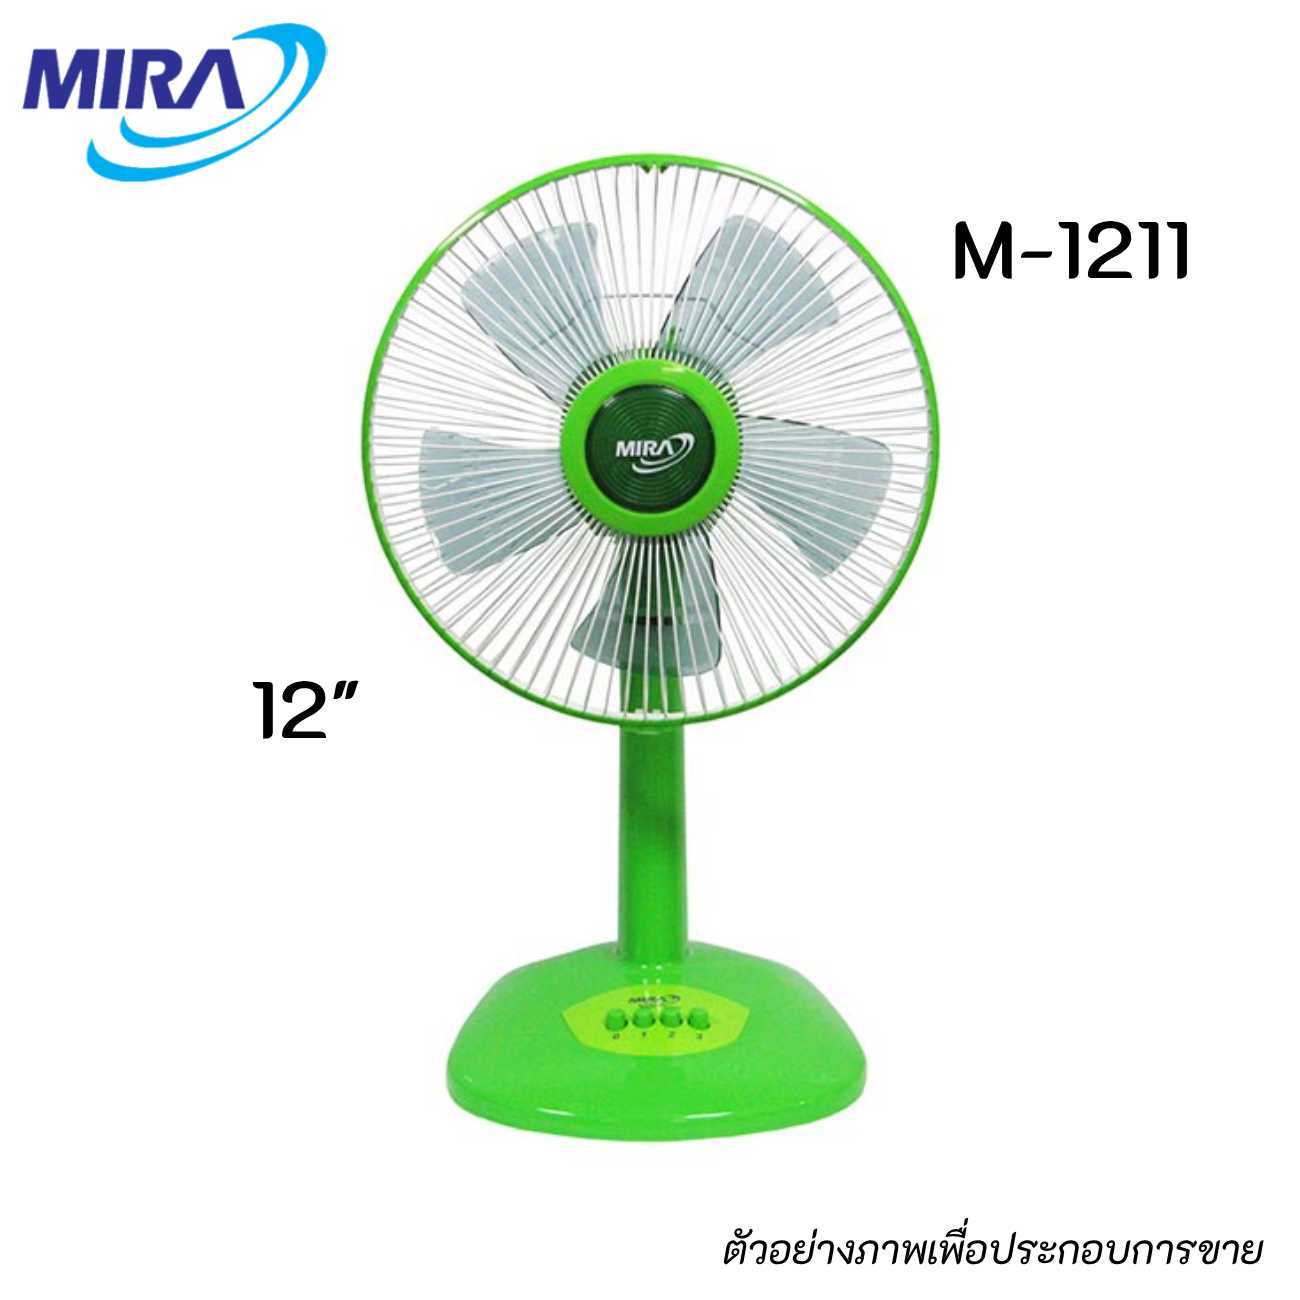 MIRA M-1211 พัดลมตั้งโต๊ะ ขนาด 12 นิ้ว สีเขียว